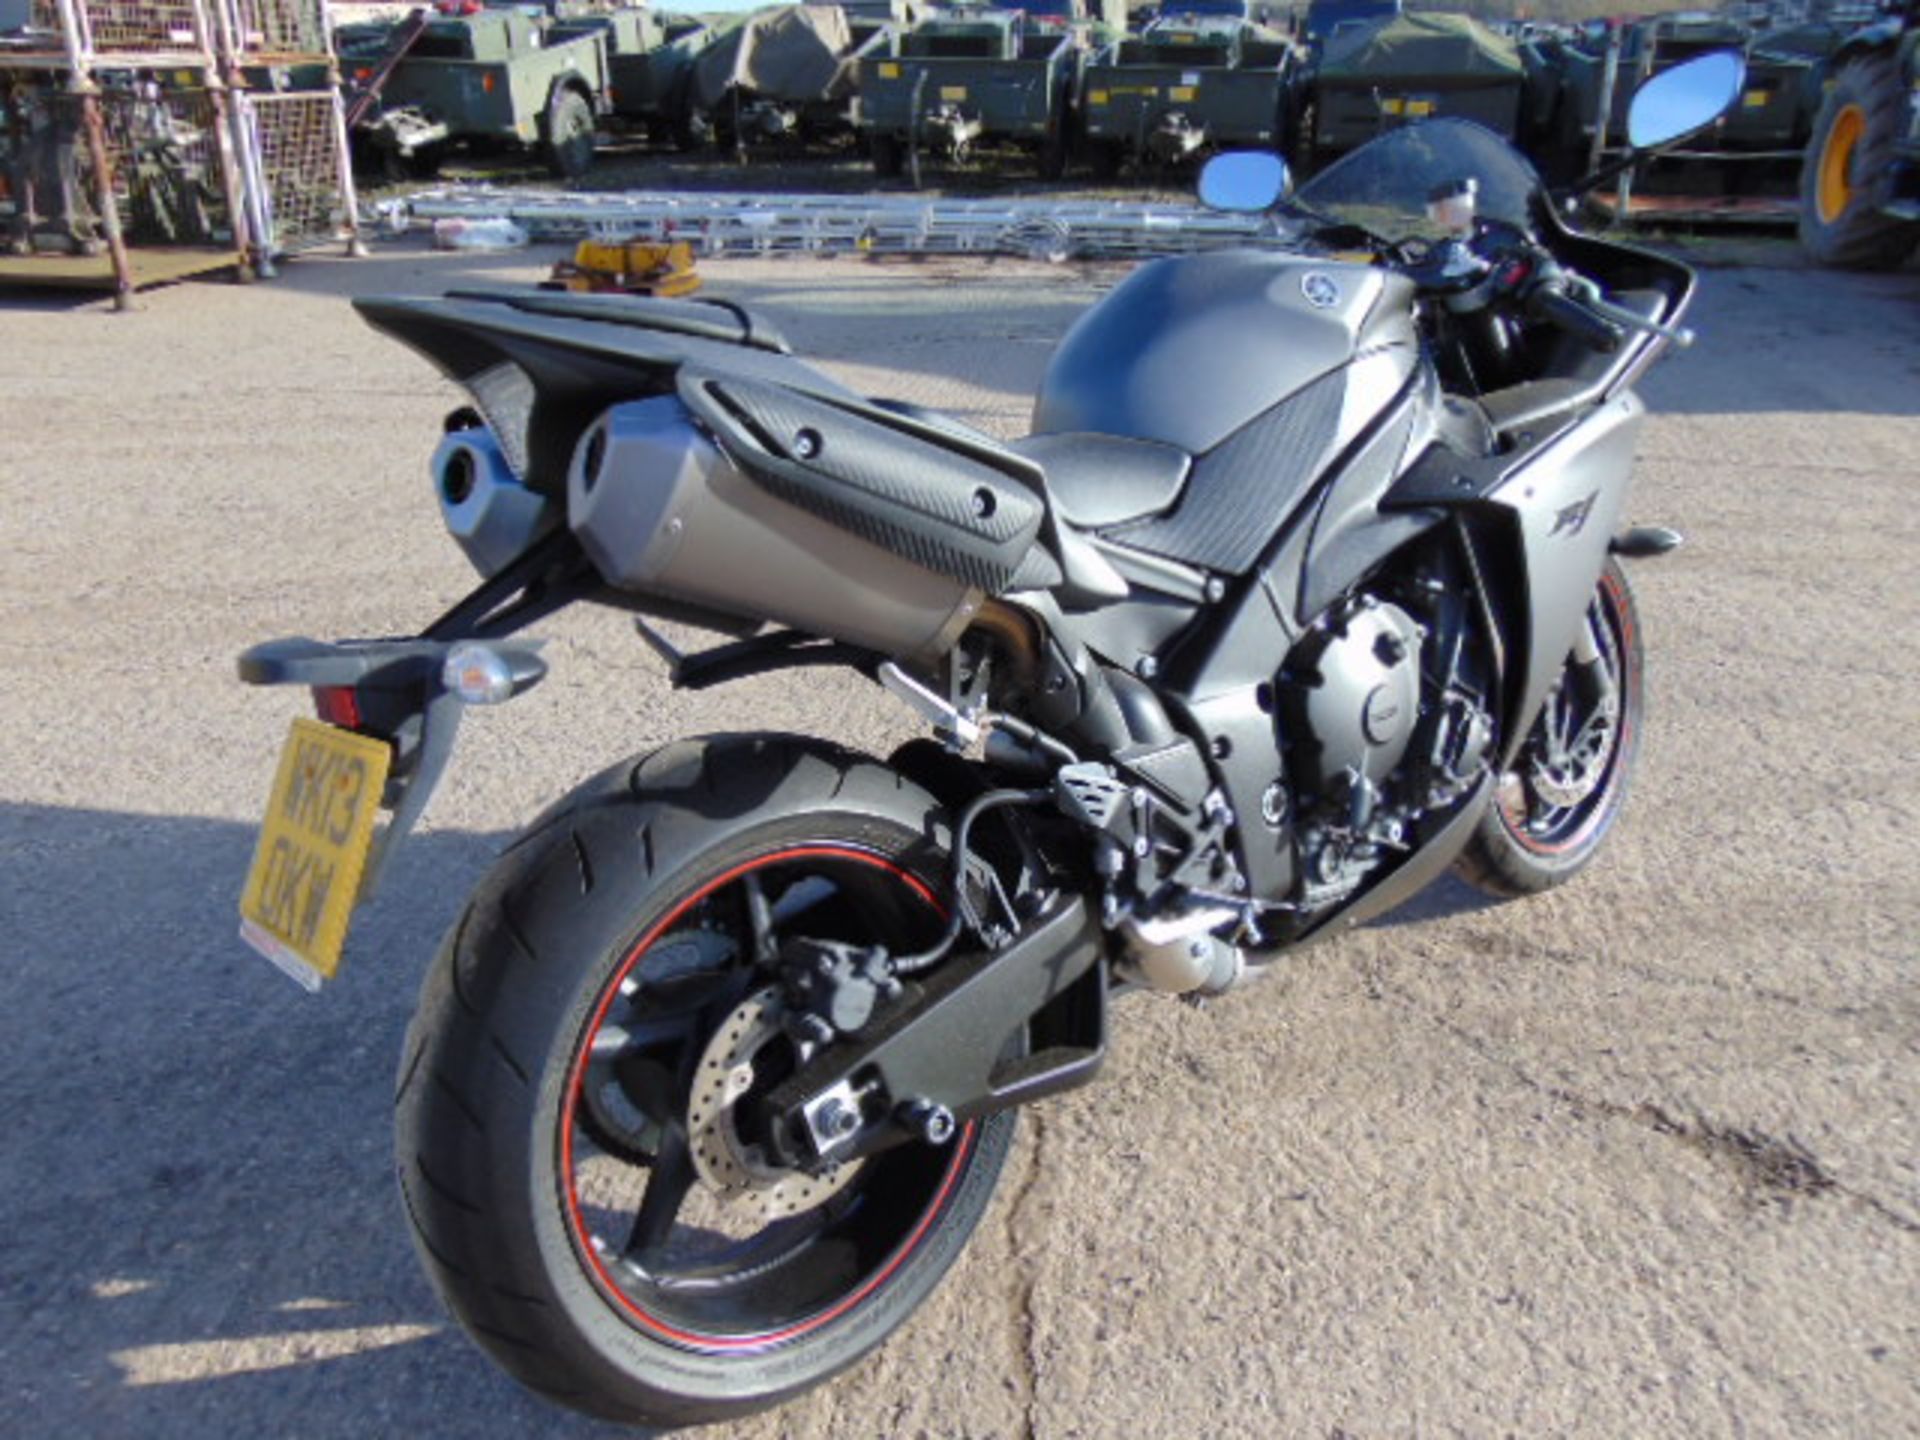 2013 Yamaha YZF-R1 Superbike - Image 7 of 27